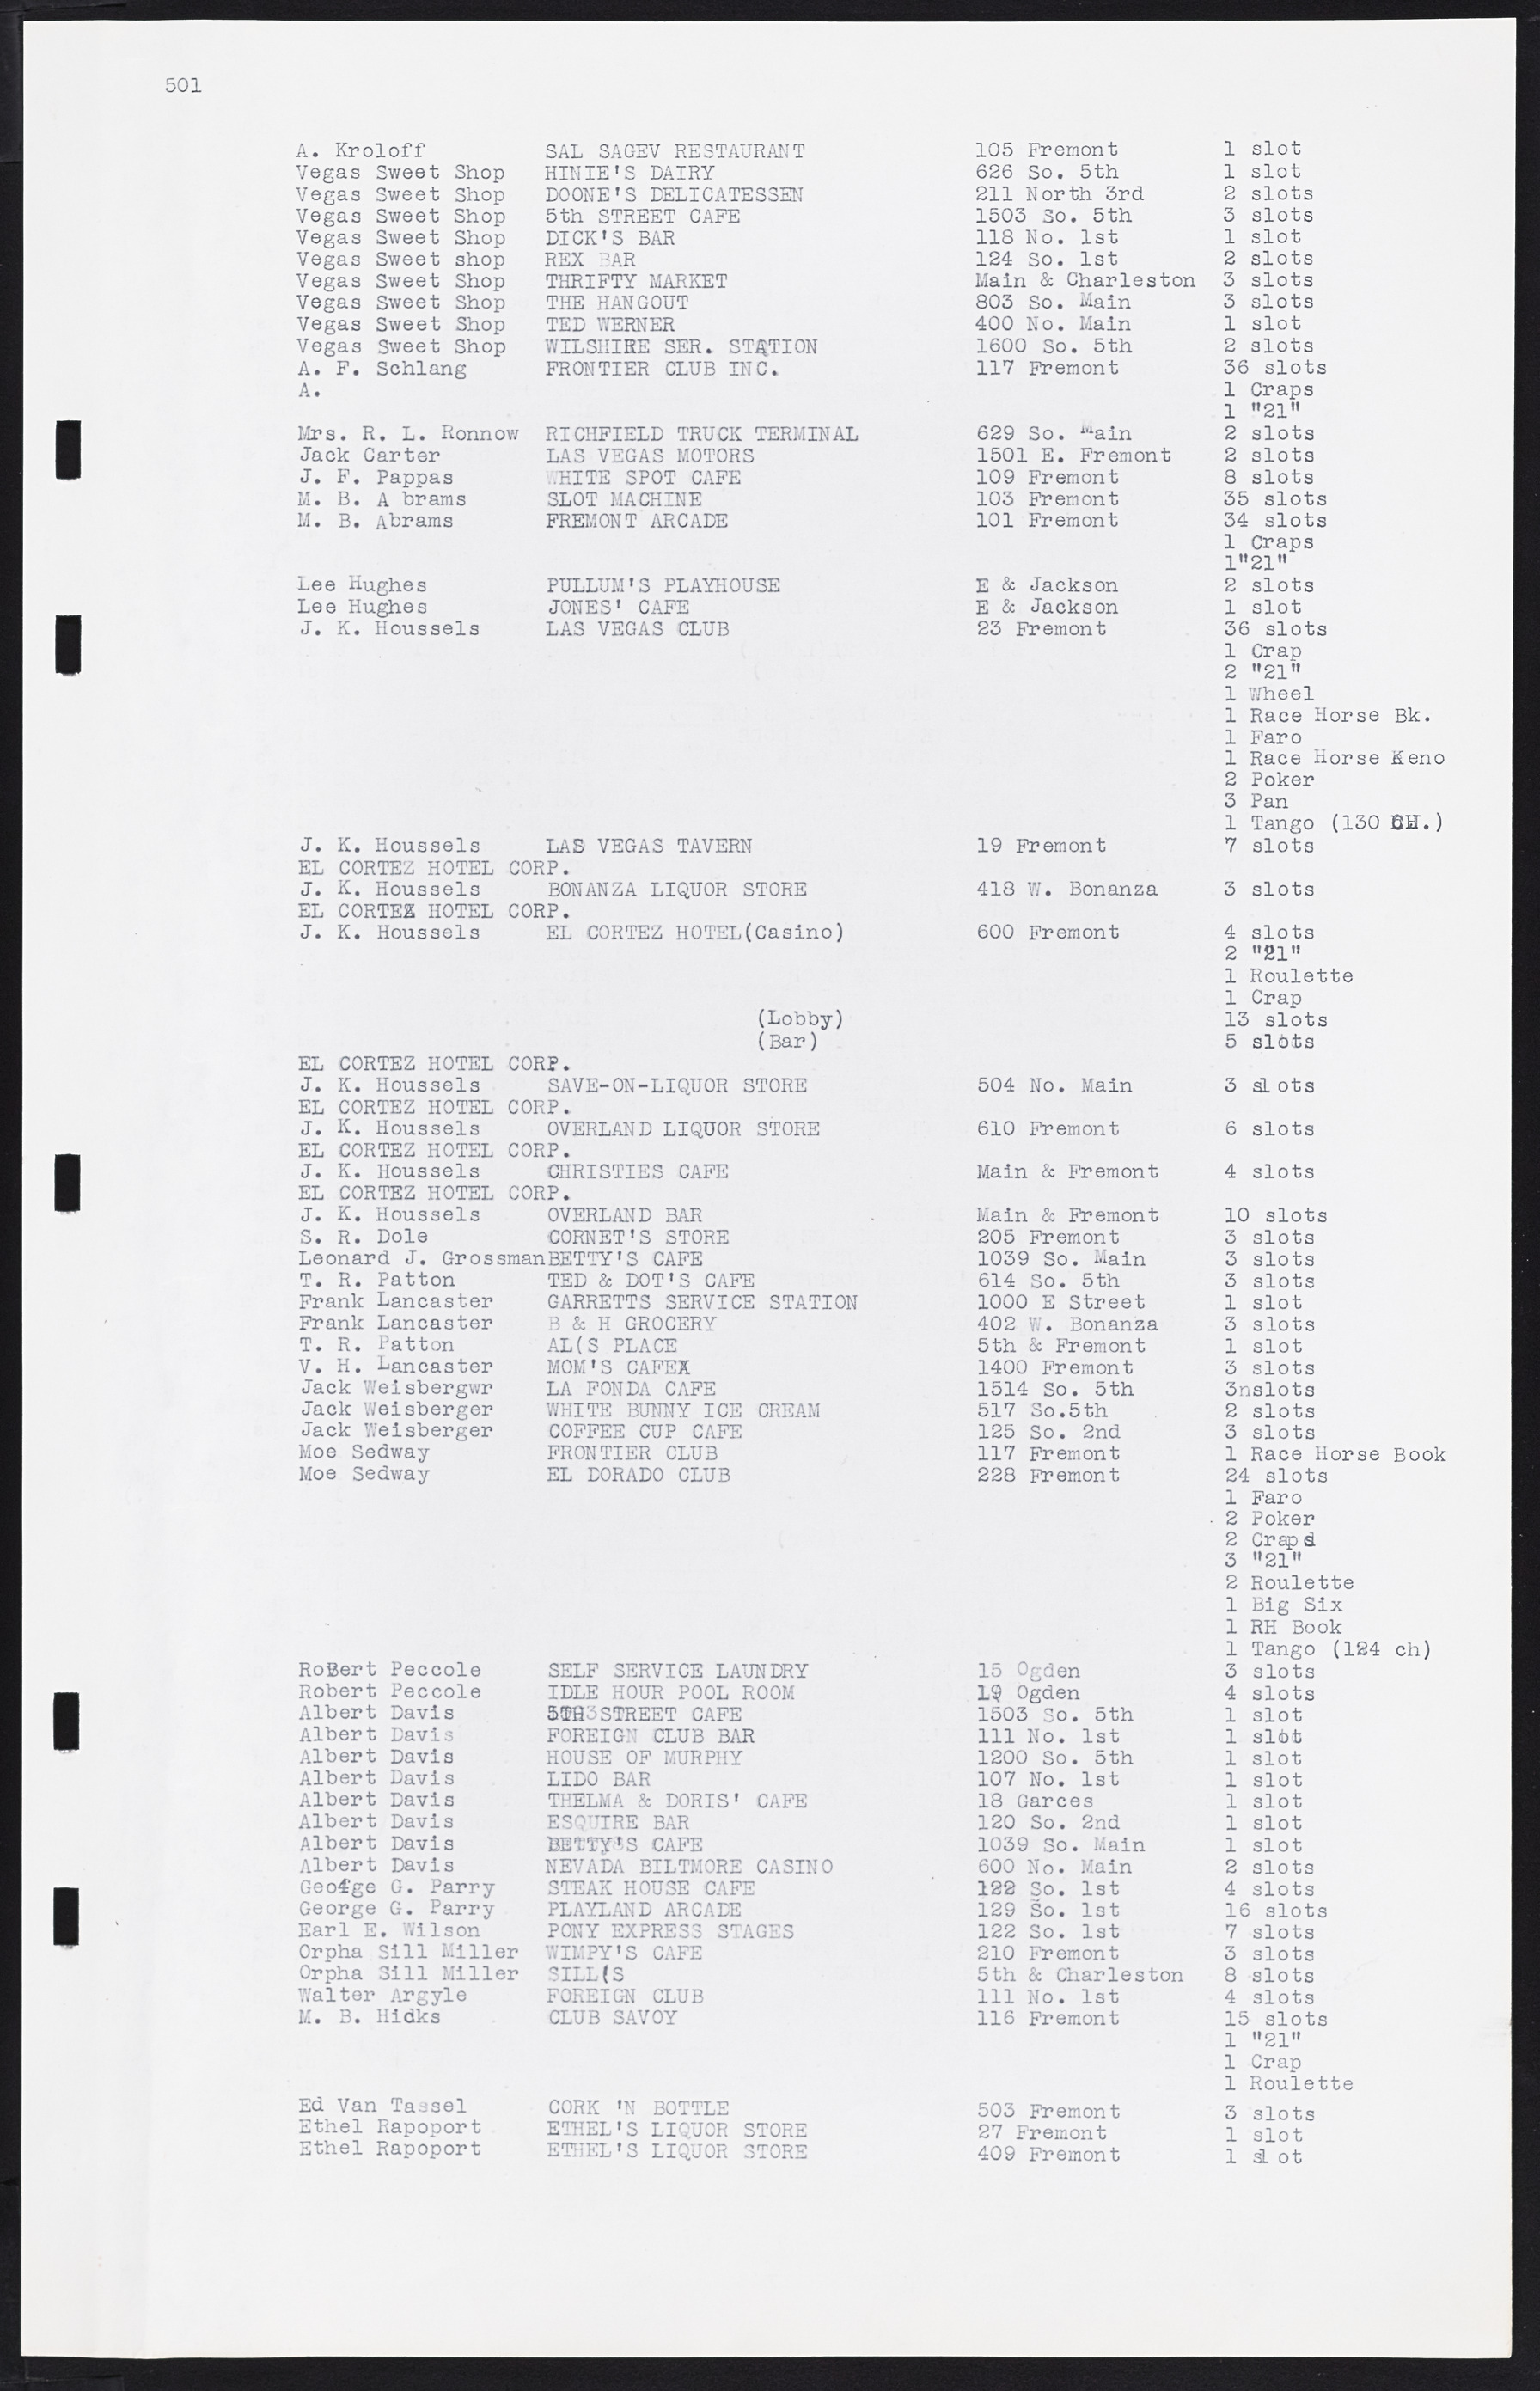 Las Vegas City Commission Minutes, August 11, 1942 to December 30, 1946, lvc000005-532